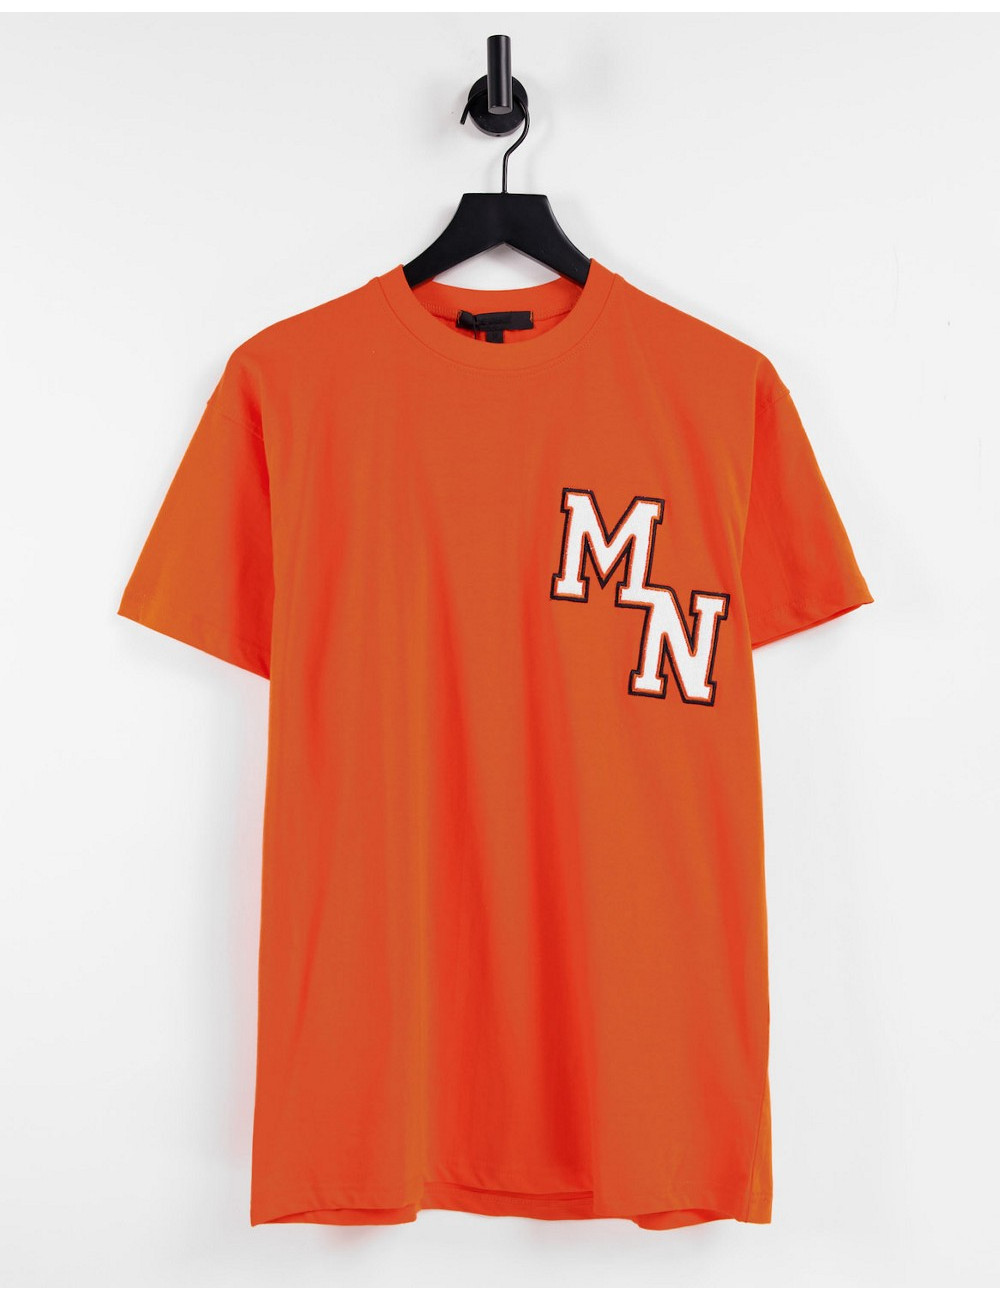 Mennace t-shirt in orange...